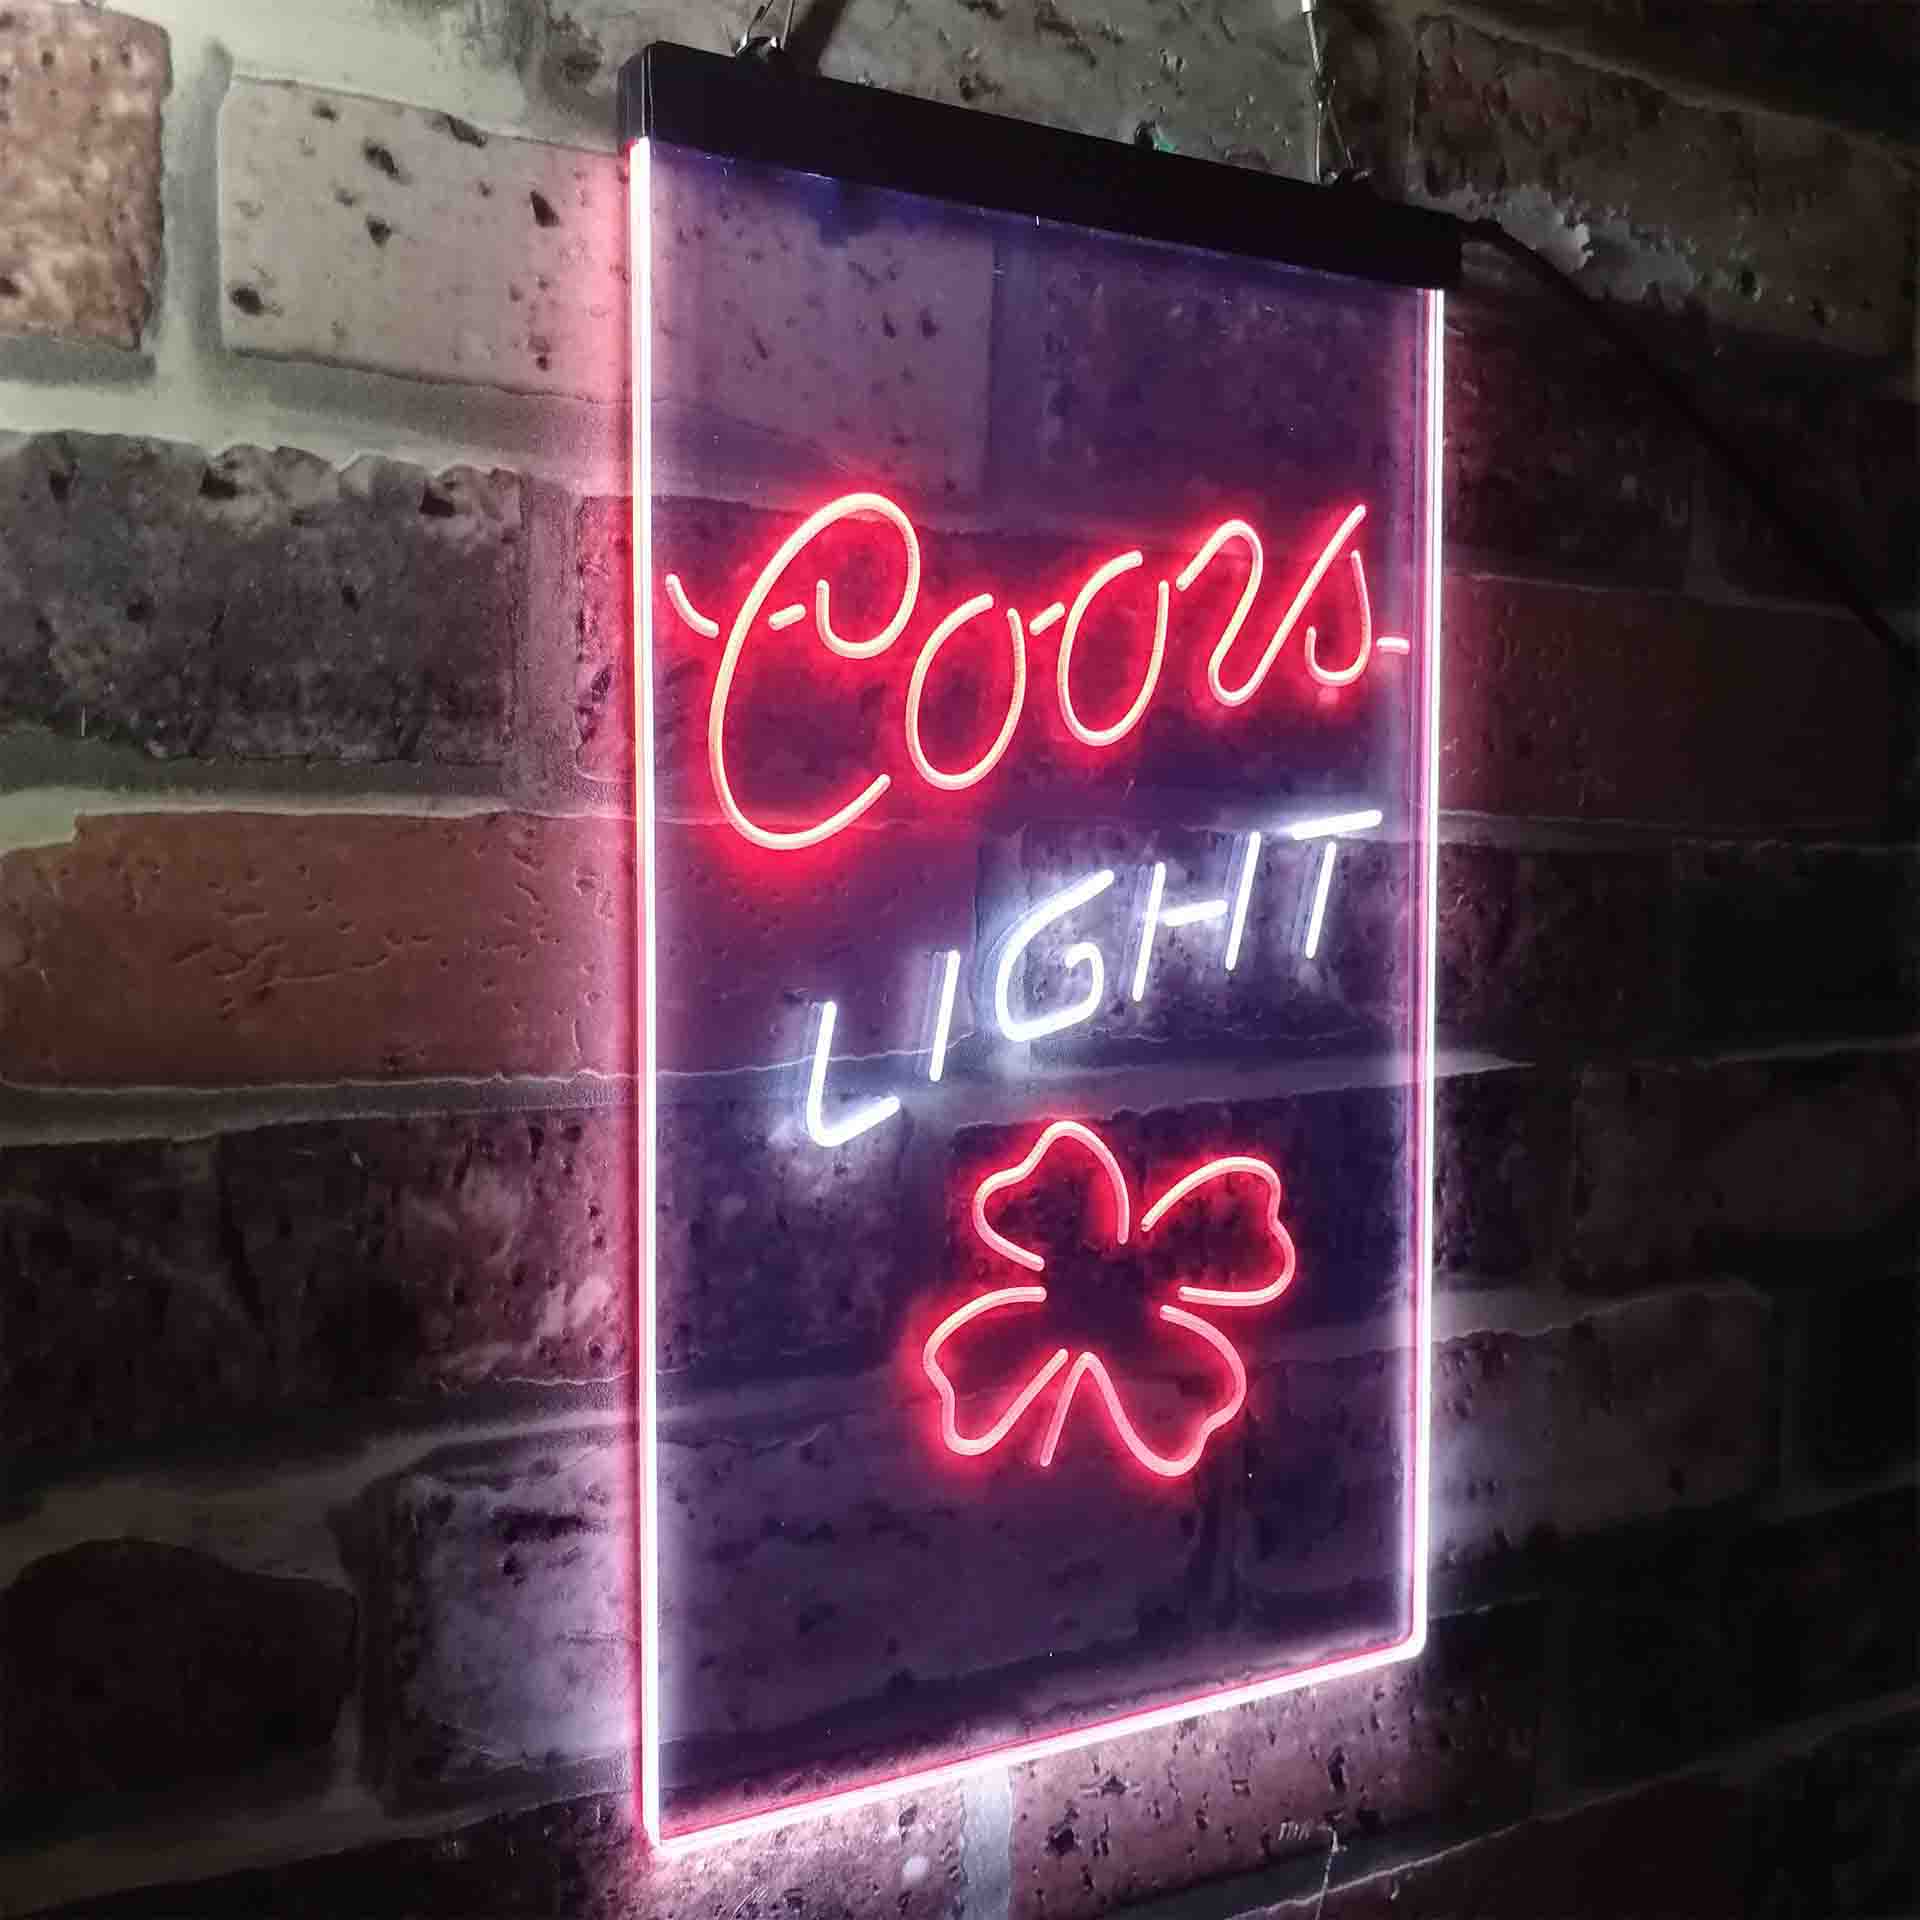 Coors Light 4 Leaf Clover Beer Neon-Like LED Sign